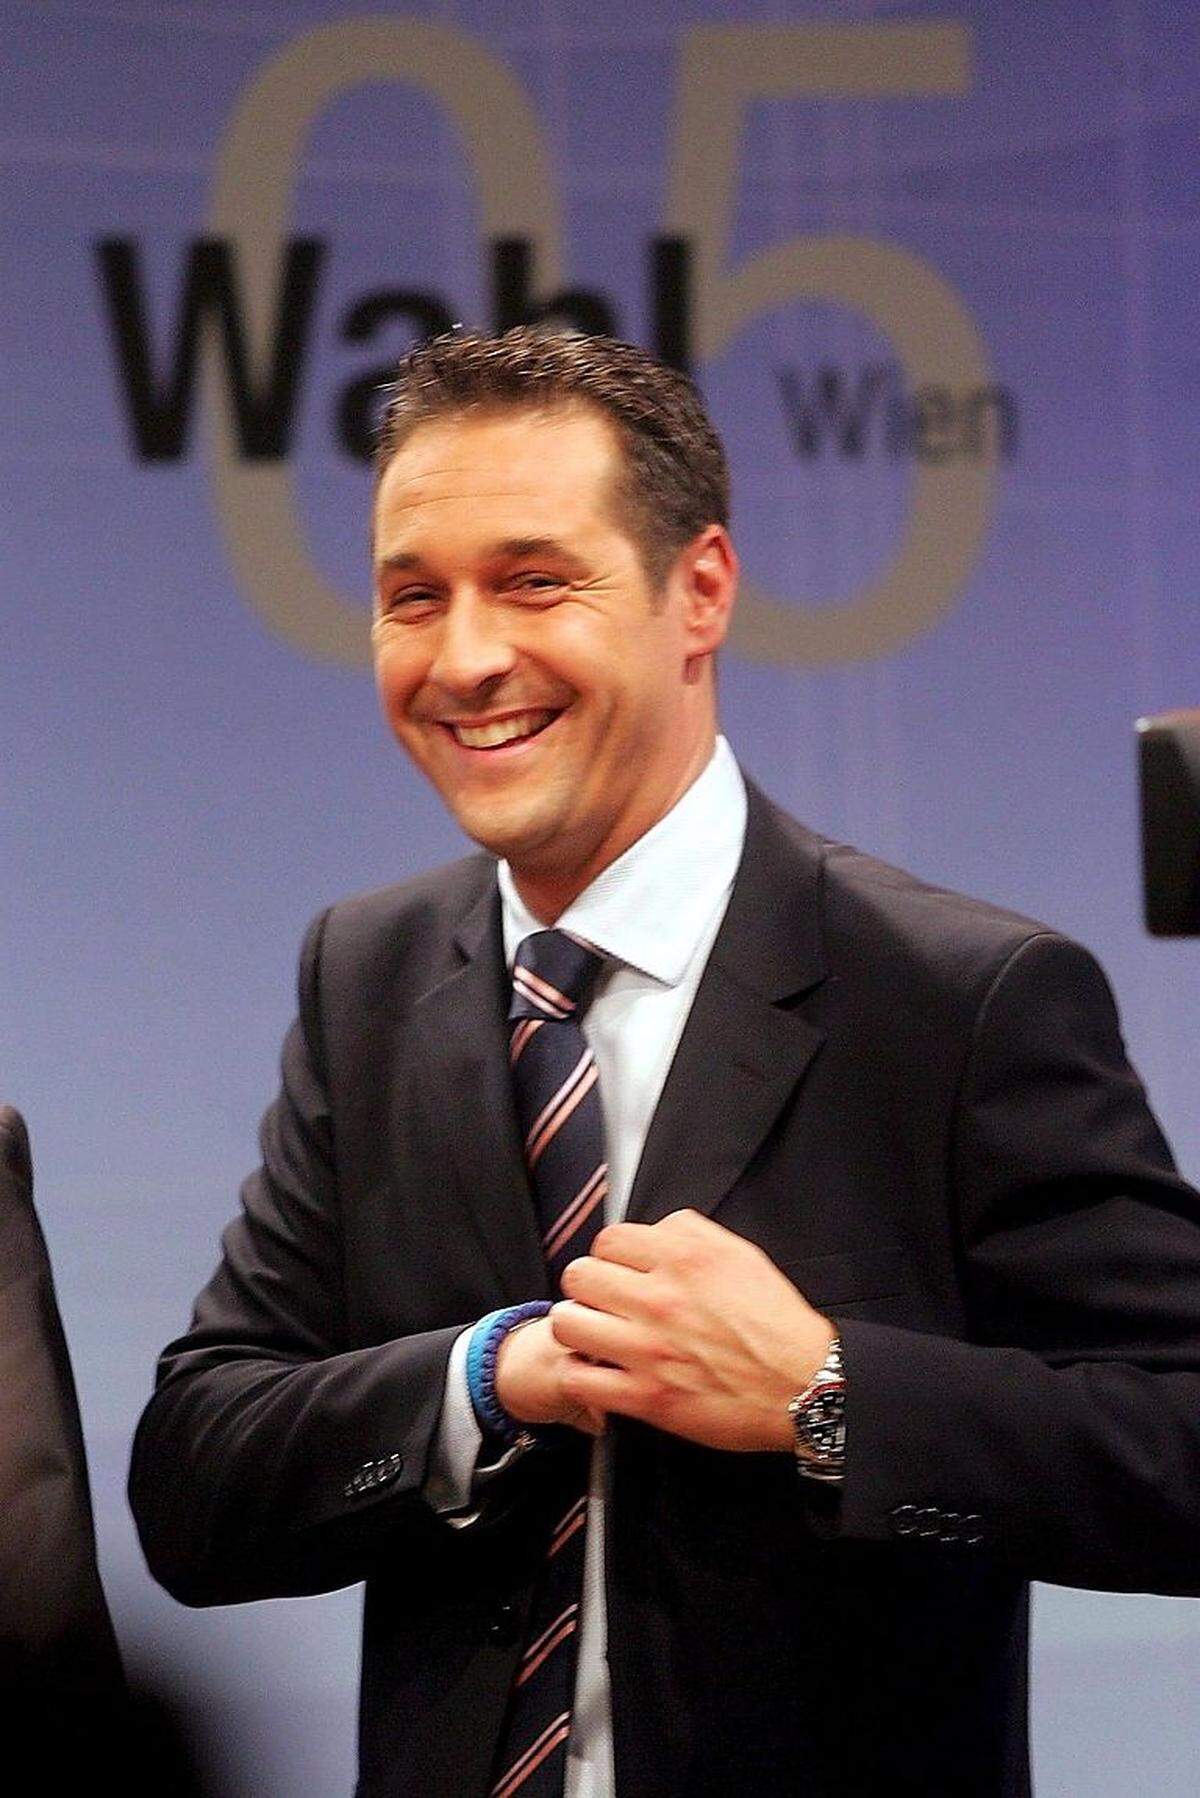 Am 4. April 2005 beschloss die freiheitliche Spitze, sich abzuspalten. Man taufte sich „Bündnis Zukunft Österreich“" (BZÖ) und wechselte farblich zu Orange. In der Koalition mit der ÖVP gab es einen fliegenden Wechsel: Aus Schwarz-Blau wurde Schwarz-Orange, da die FP-Regierungsmannschaft zum BZÖ übertrat. Haider wurde zum Vorsitzenden der neuen Partei gewählt. Die „alte“ FPÖ kürte indes am 23. April 2005 Heinz-Christian Strache (Bild) zum neuen Parteiobmann.